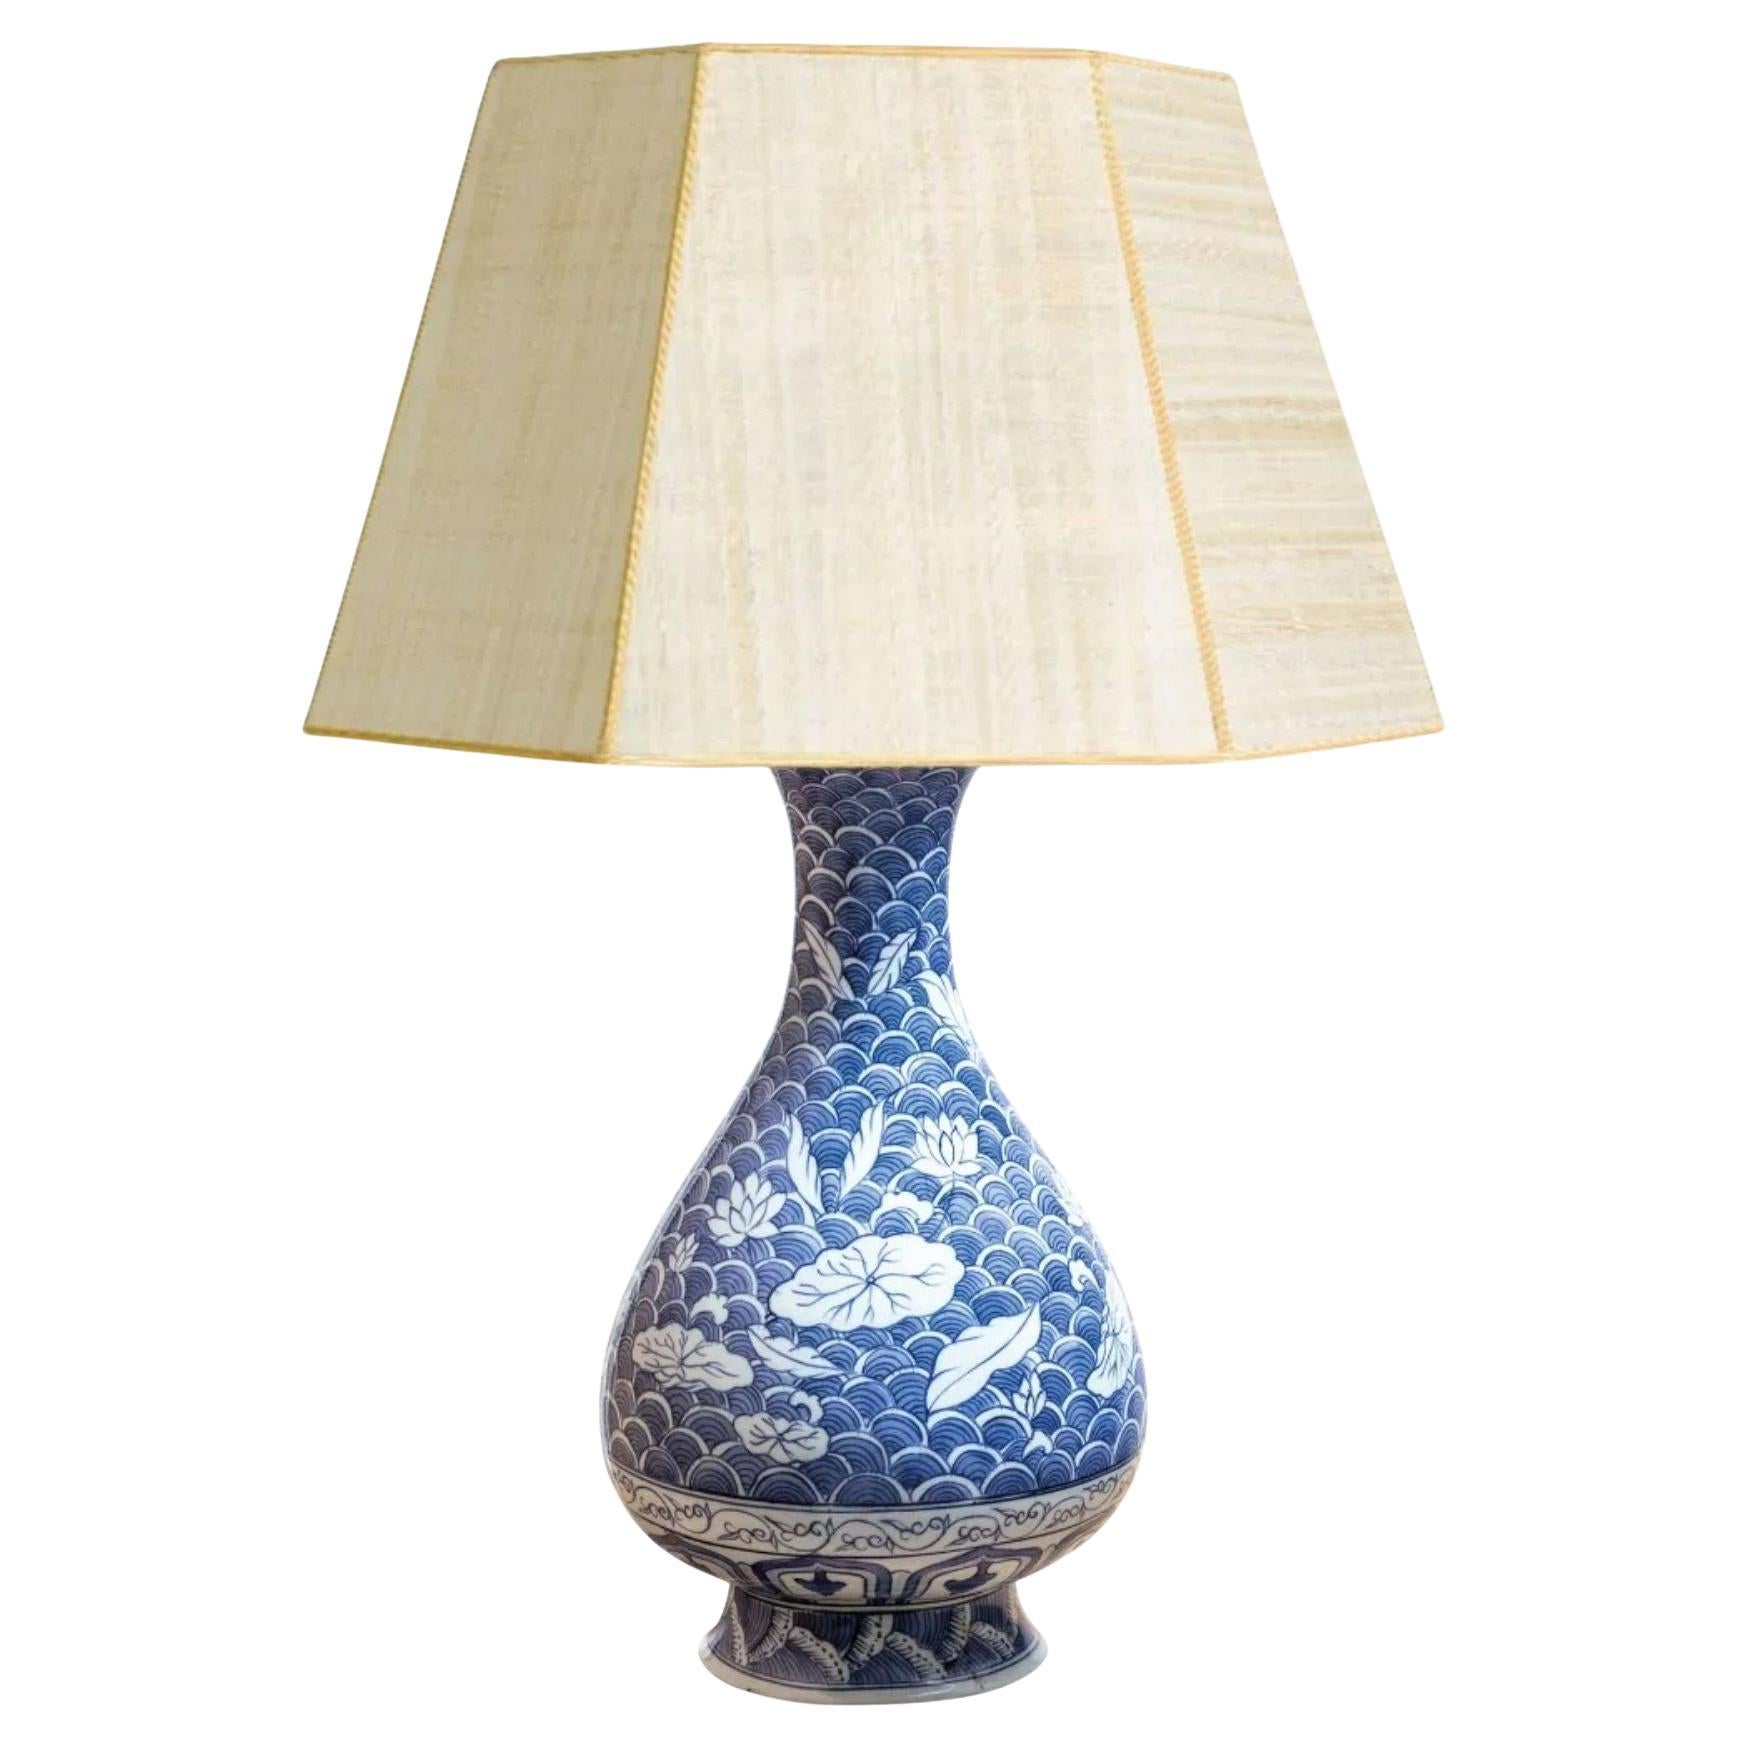 Chinesische Vasenlampe aus Porzellan in Blau und Weiß, 19. Jahrhundert